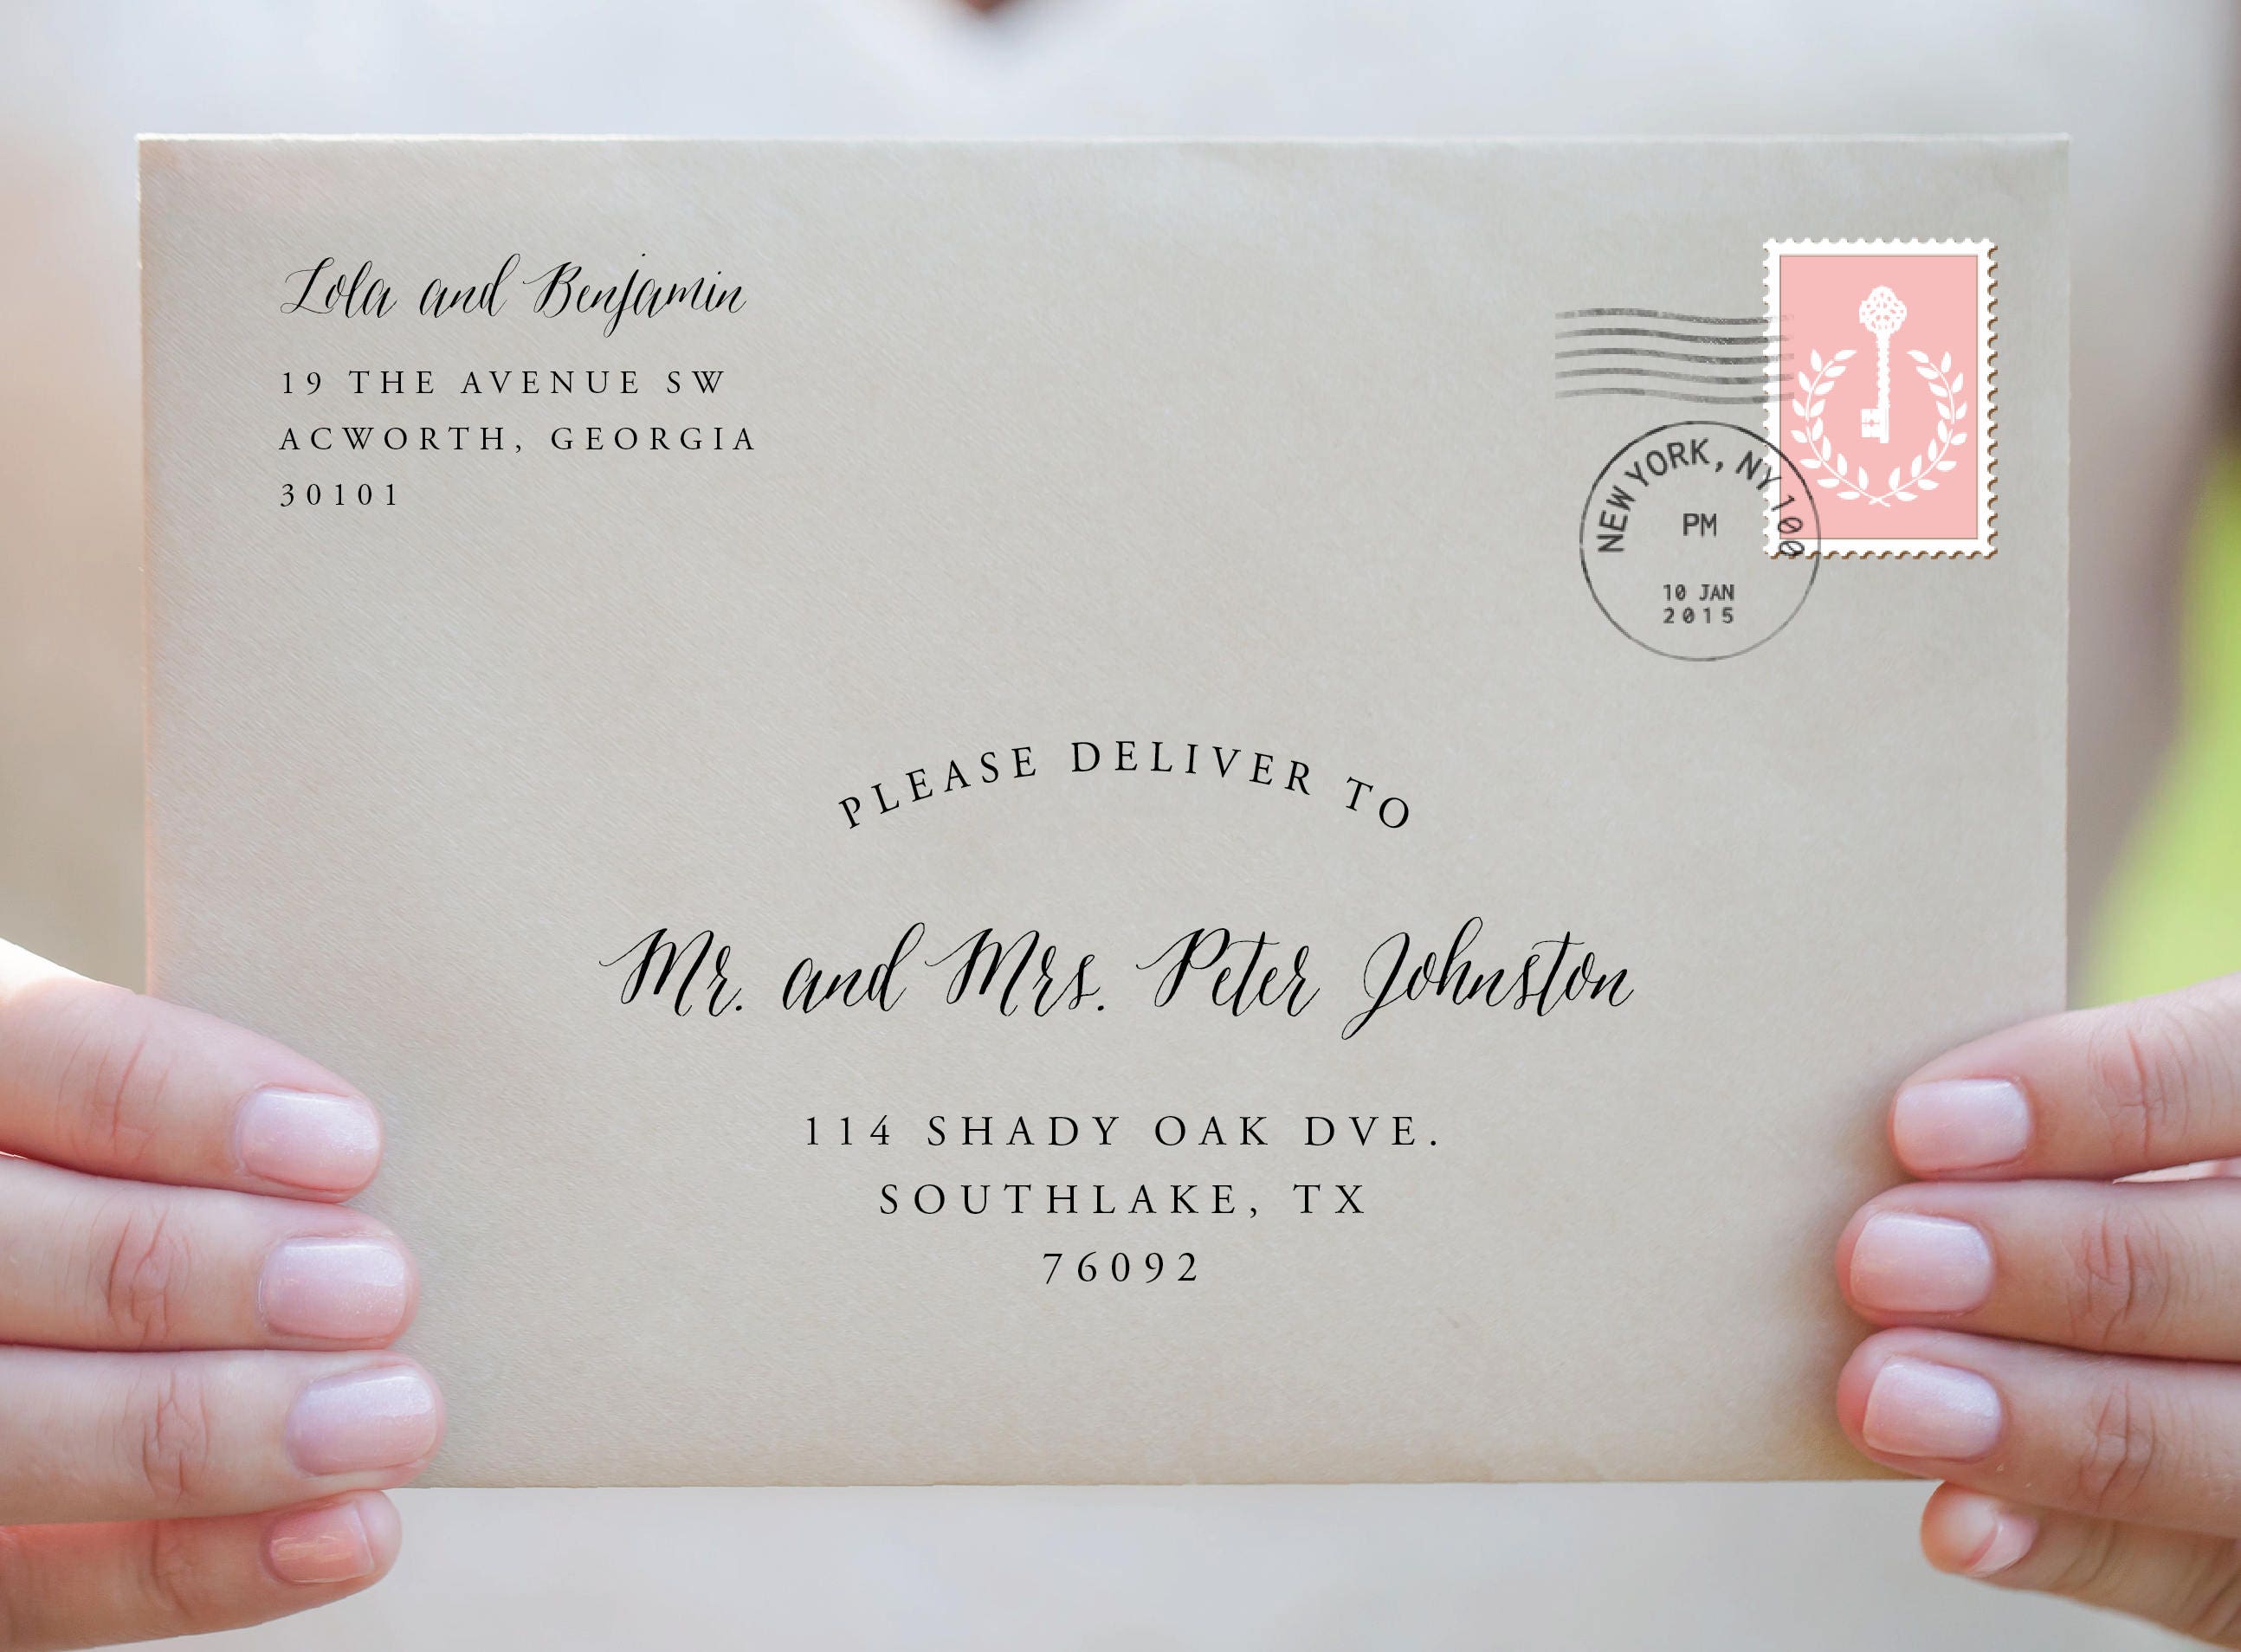 mailing a letter format envelope